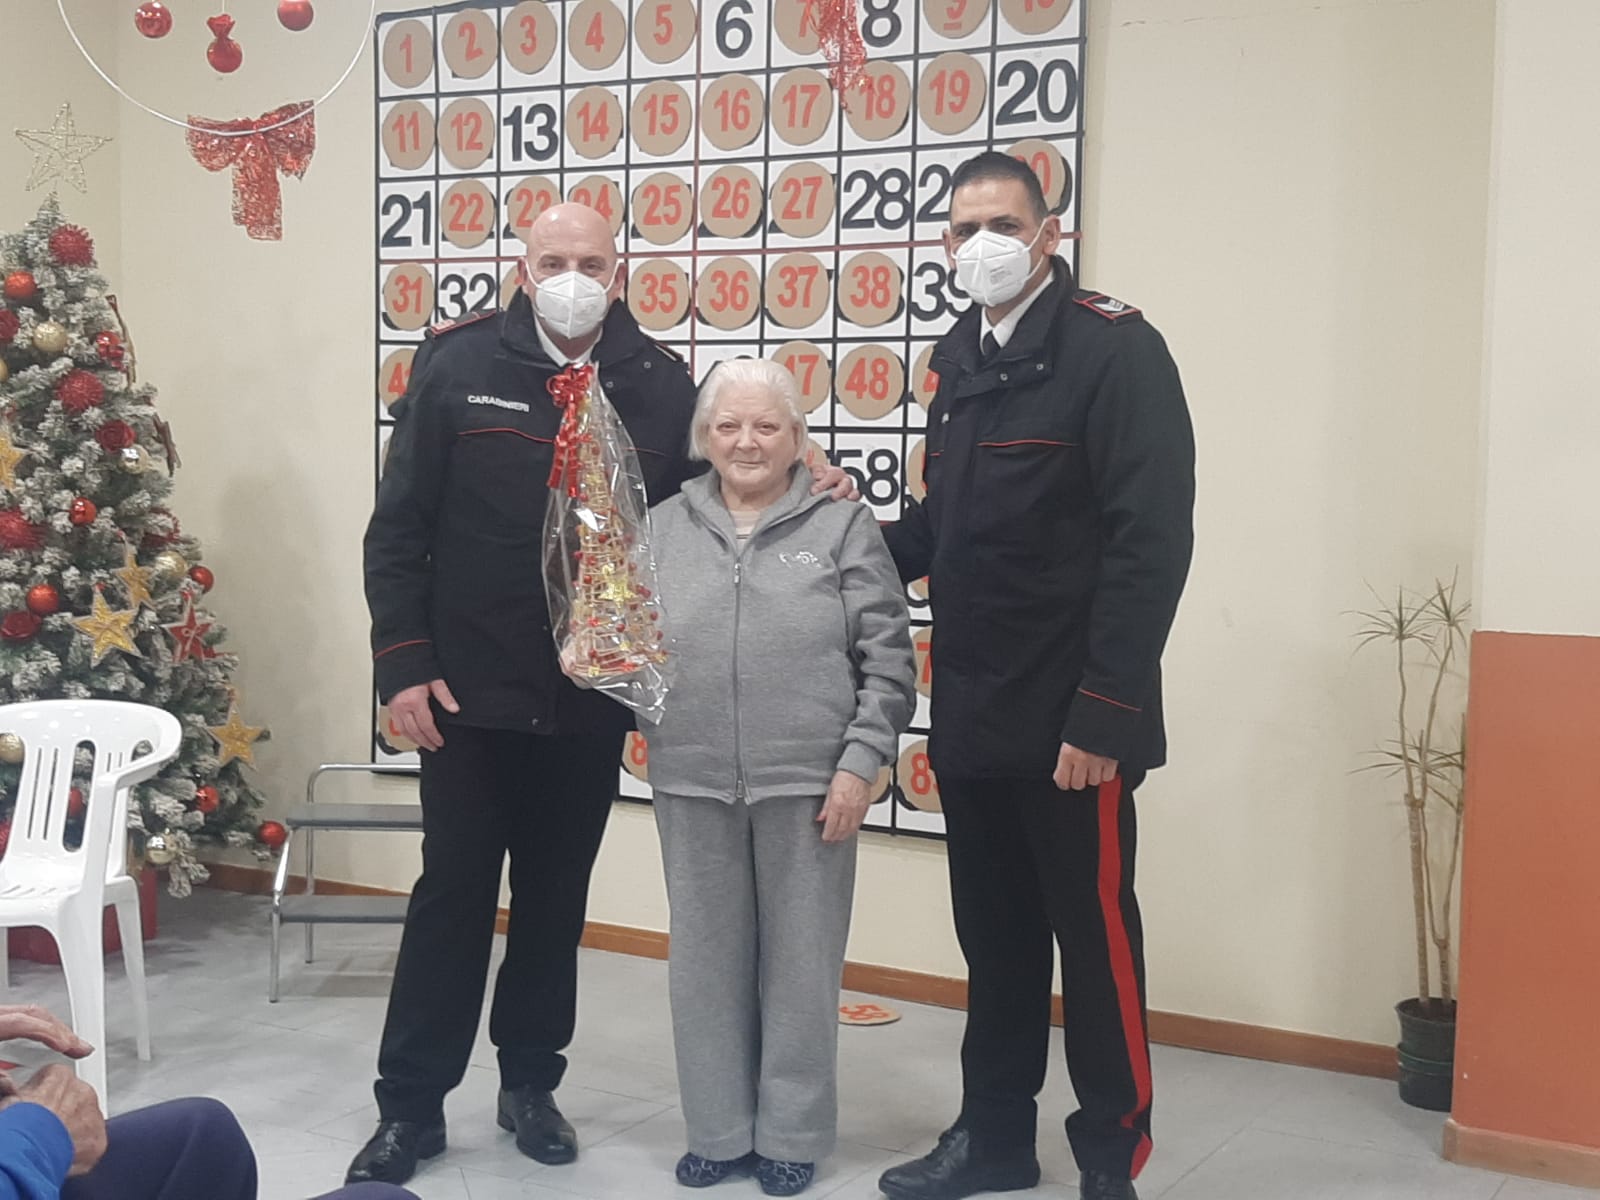 Capodanno di solidarietà, a Volturara Irpina gli anziani giocano a tombola con i carabinieri